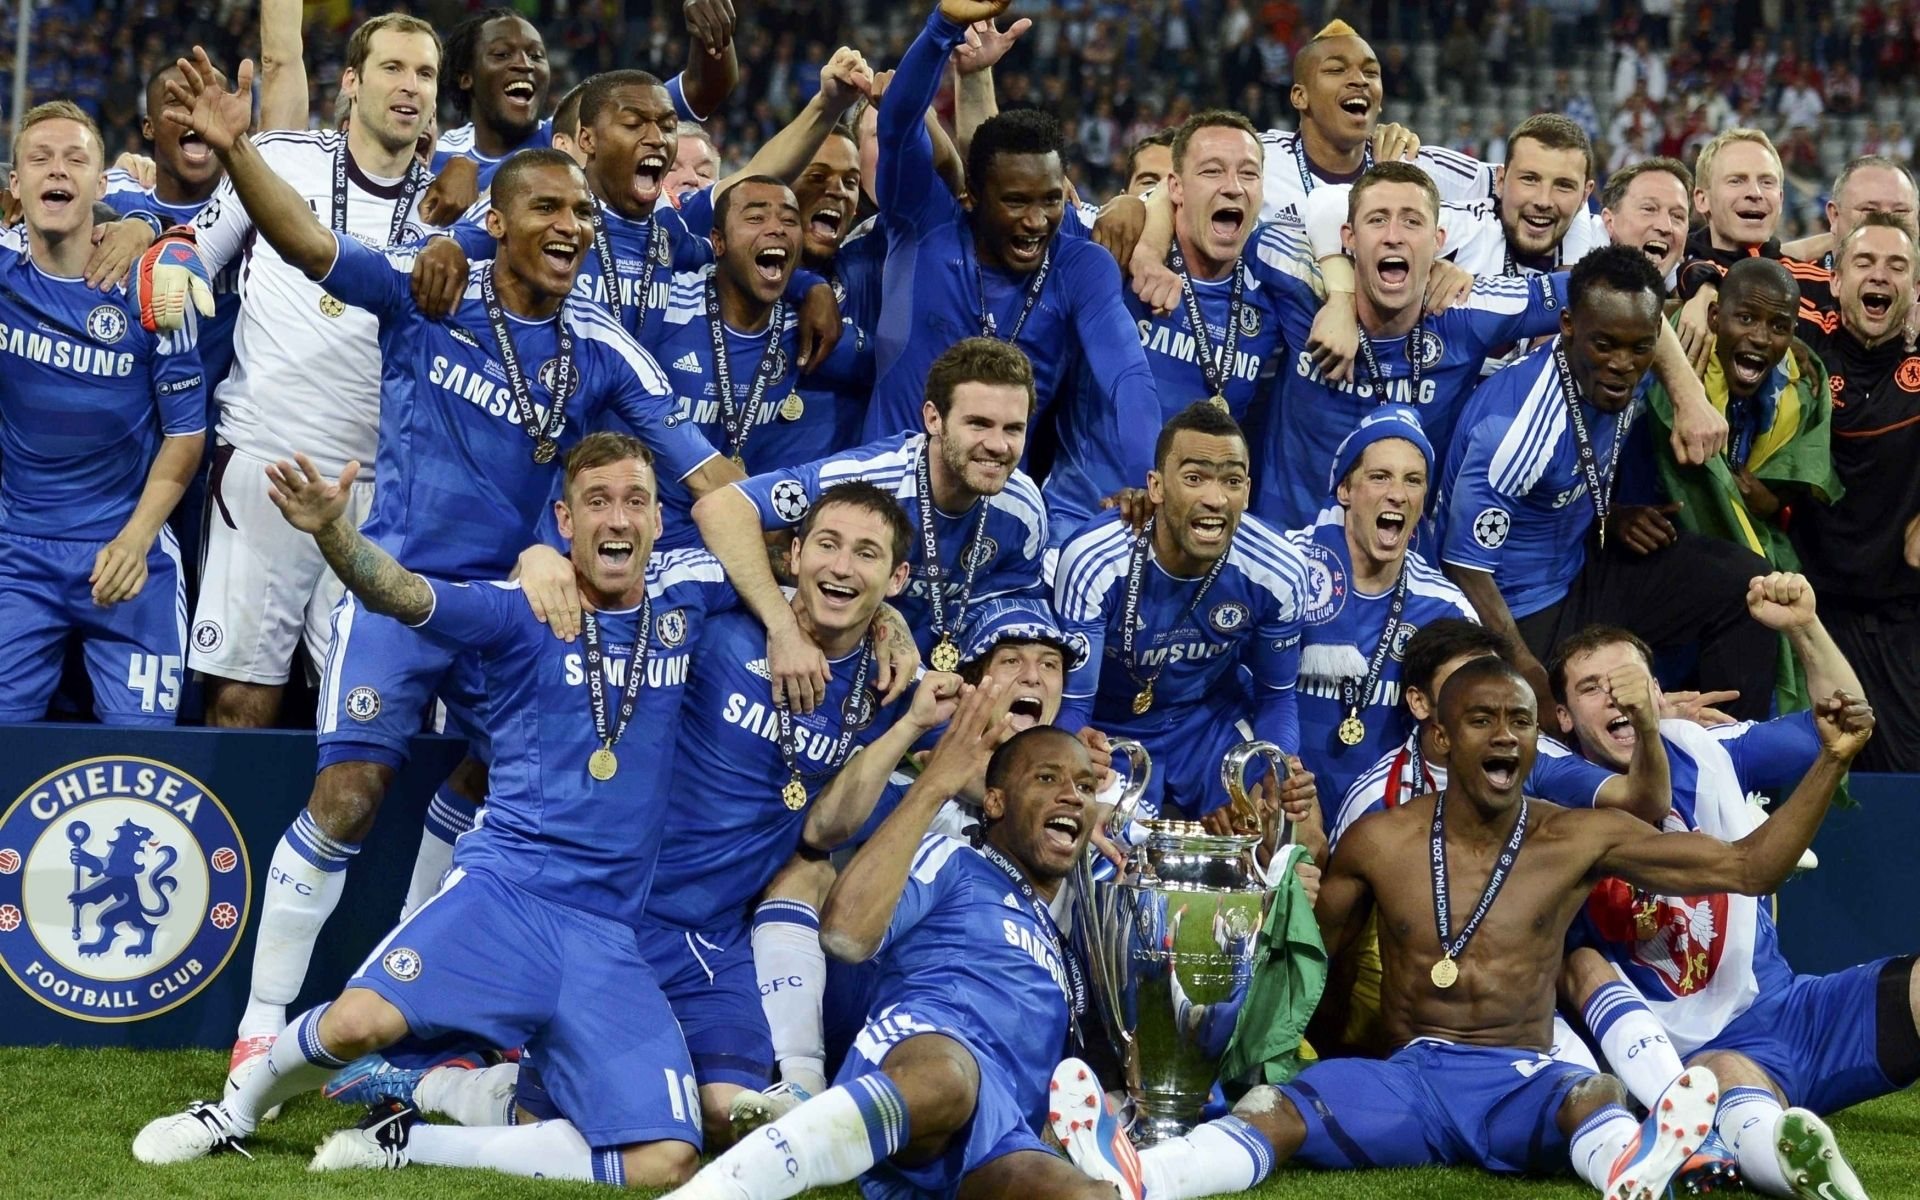 Chelsea FC won Champions League 2012